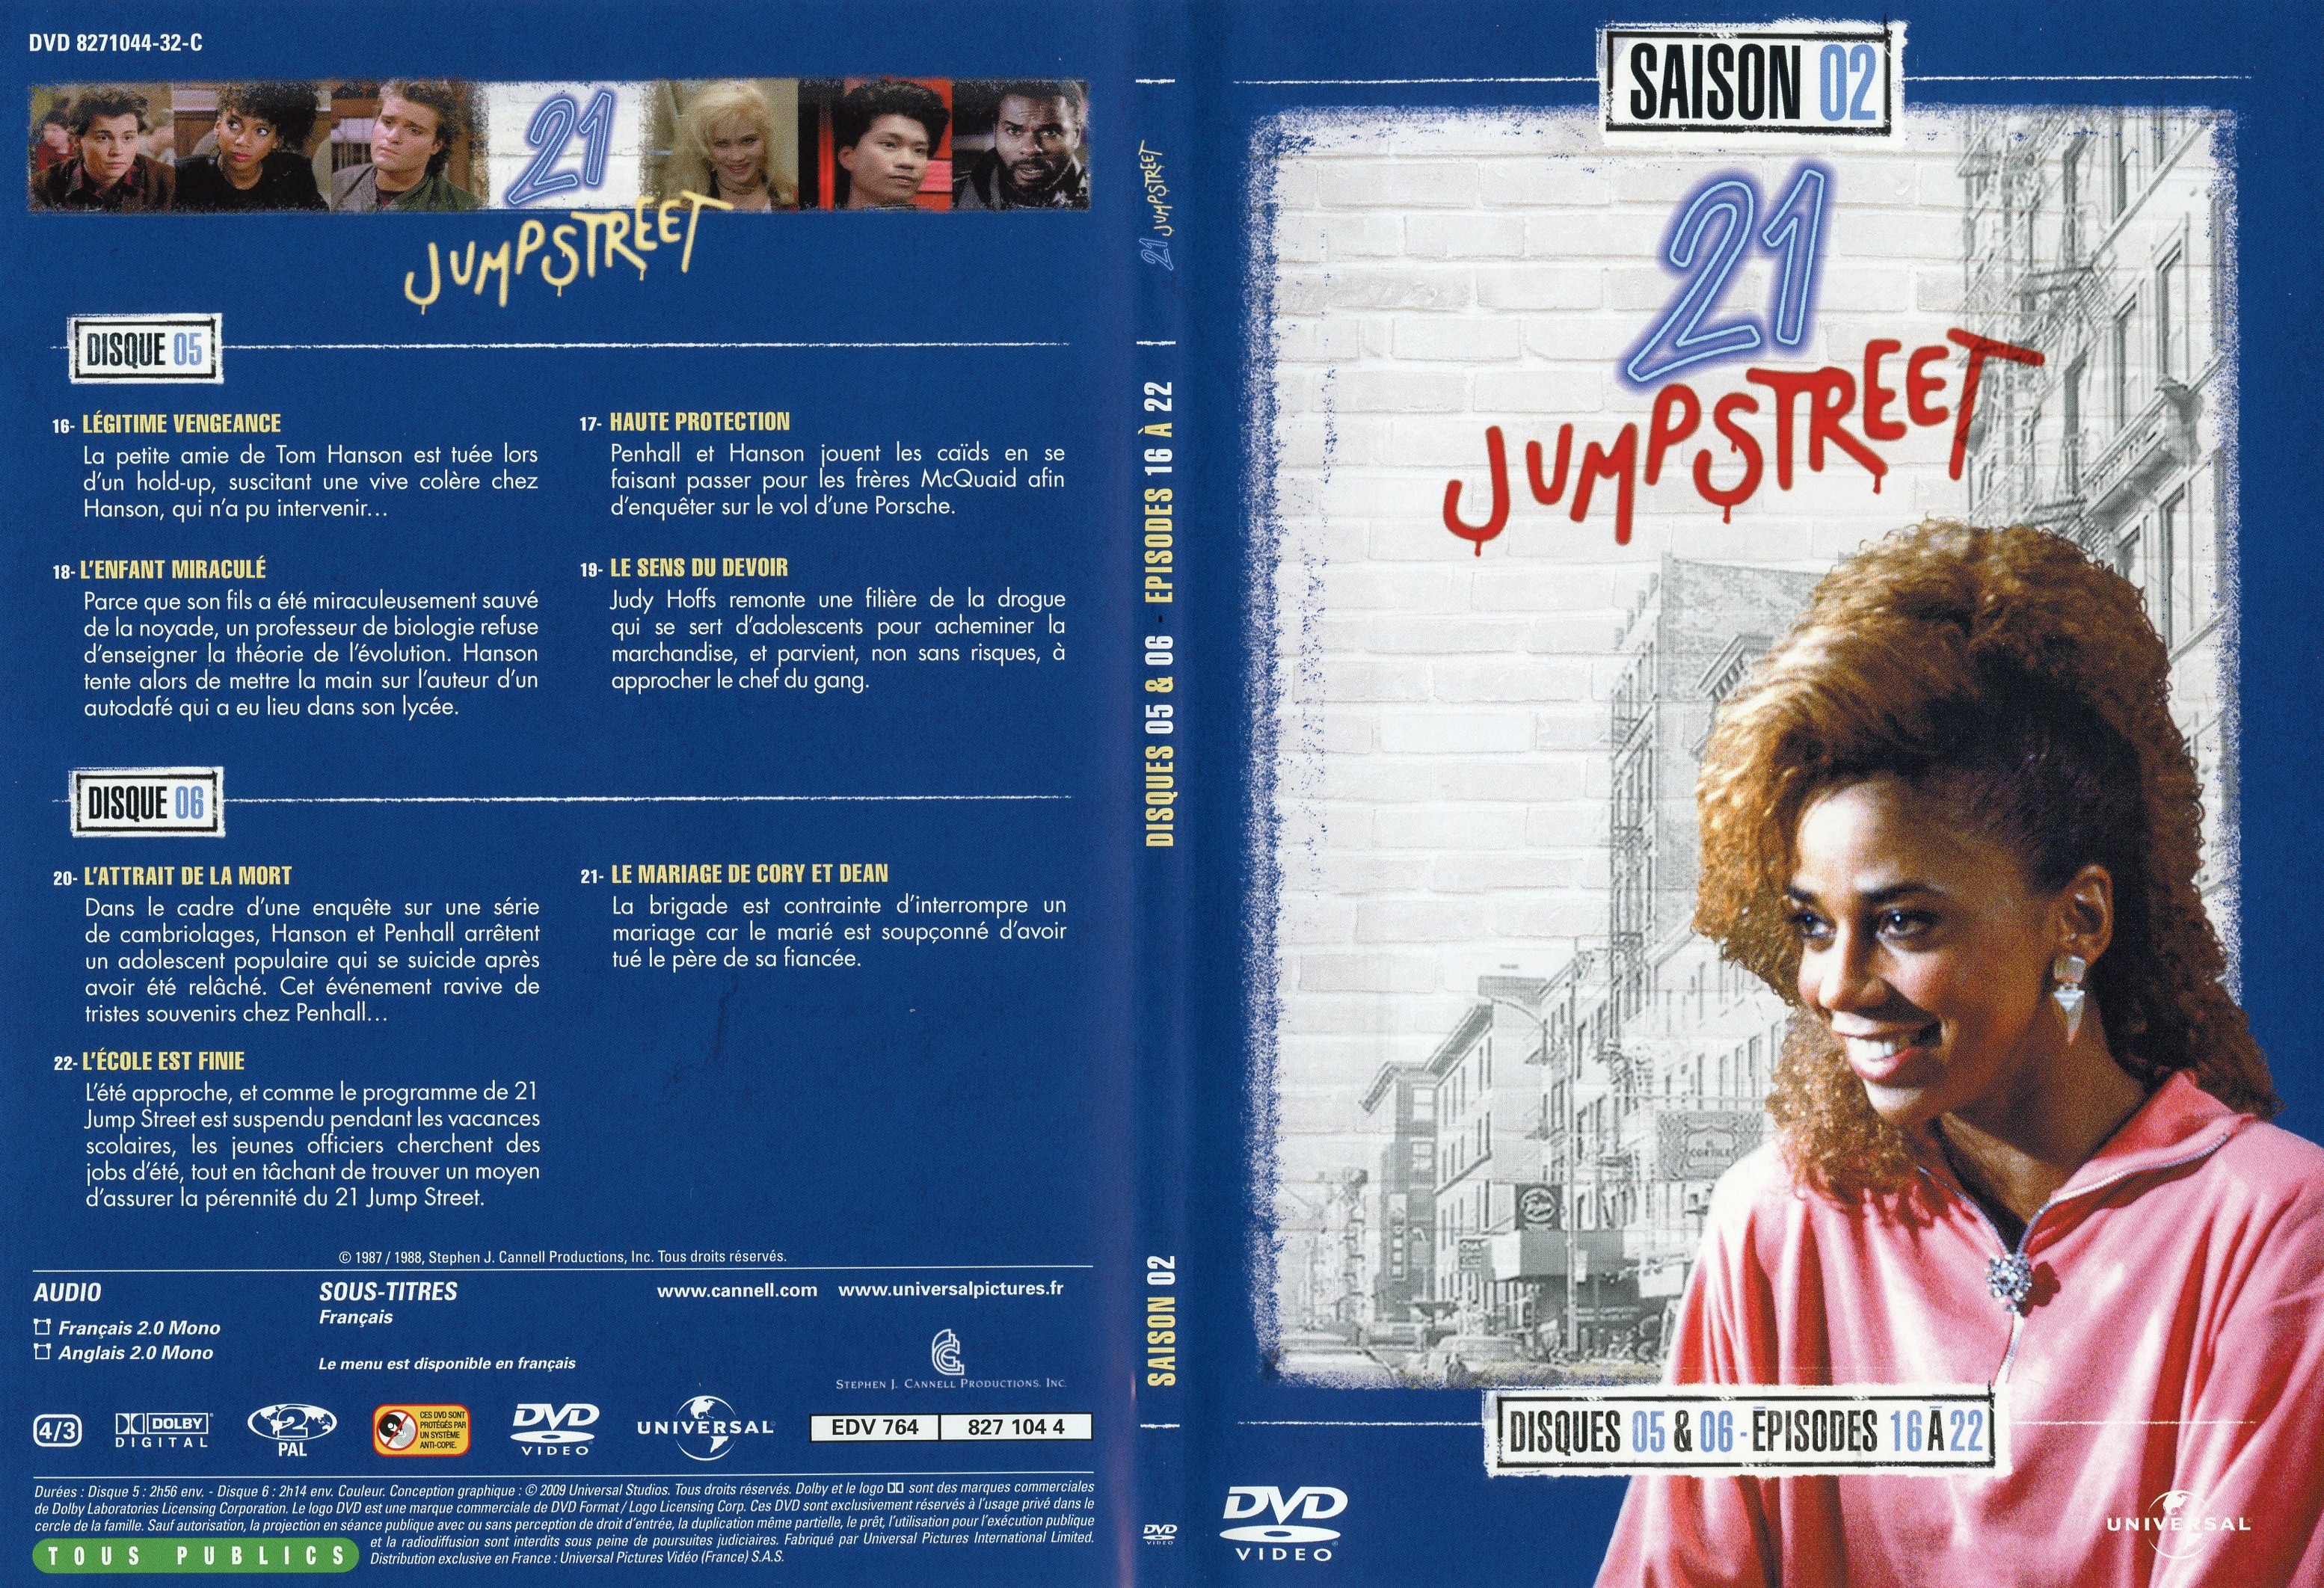 Jaquette DVD 21 jump street Saison 2 DVD 3